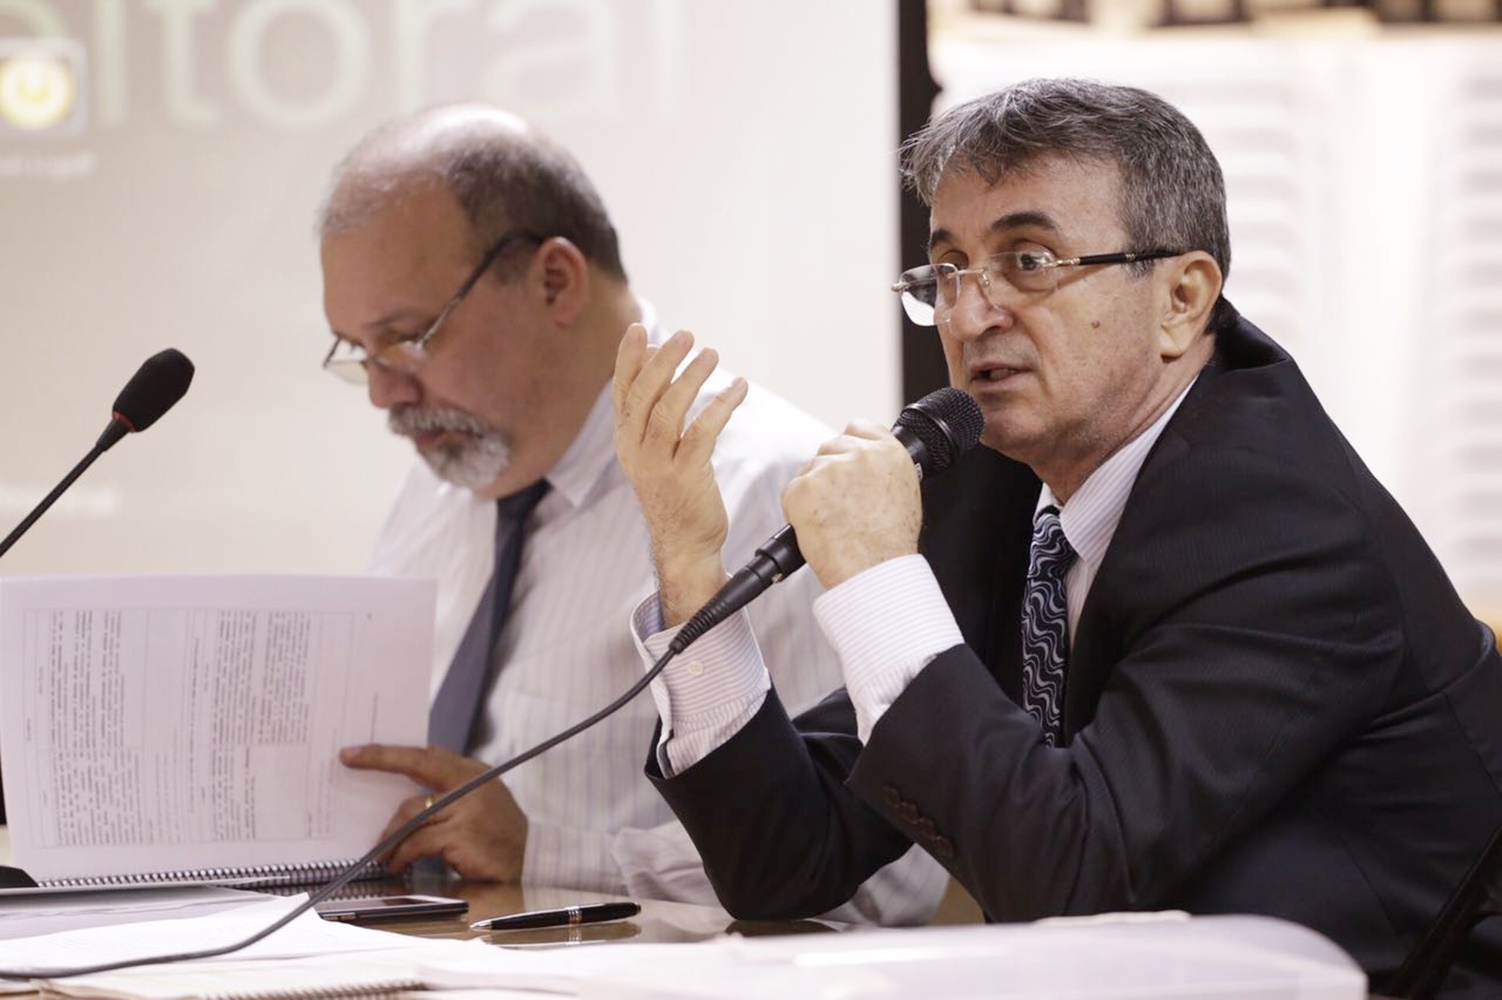 Juiz Carlos Nogueira comandou o evento